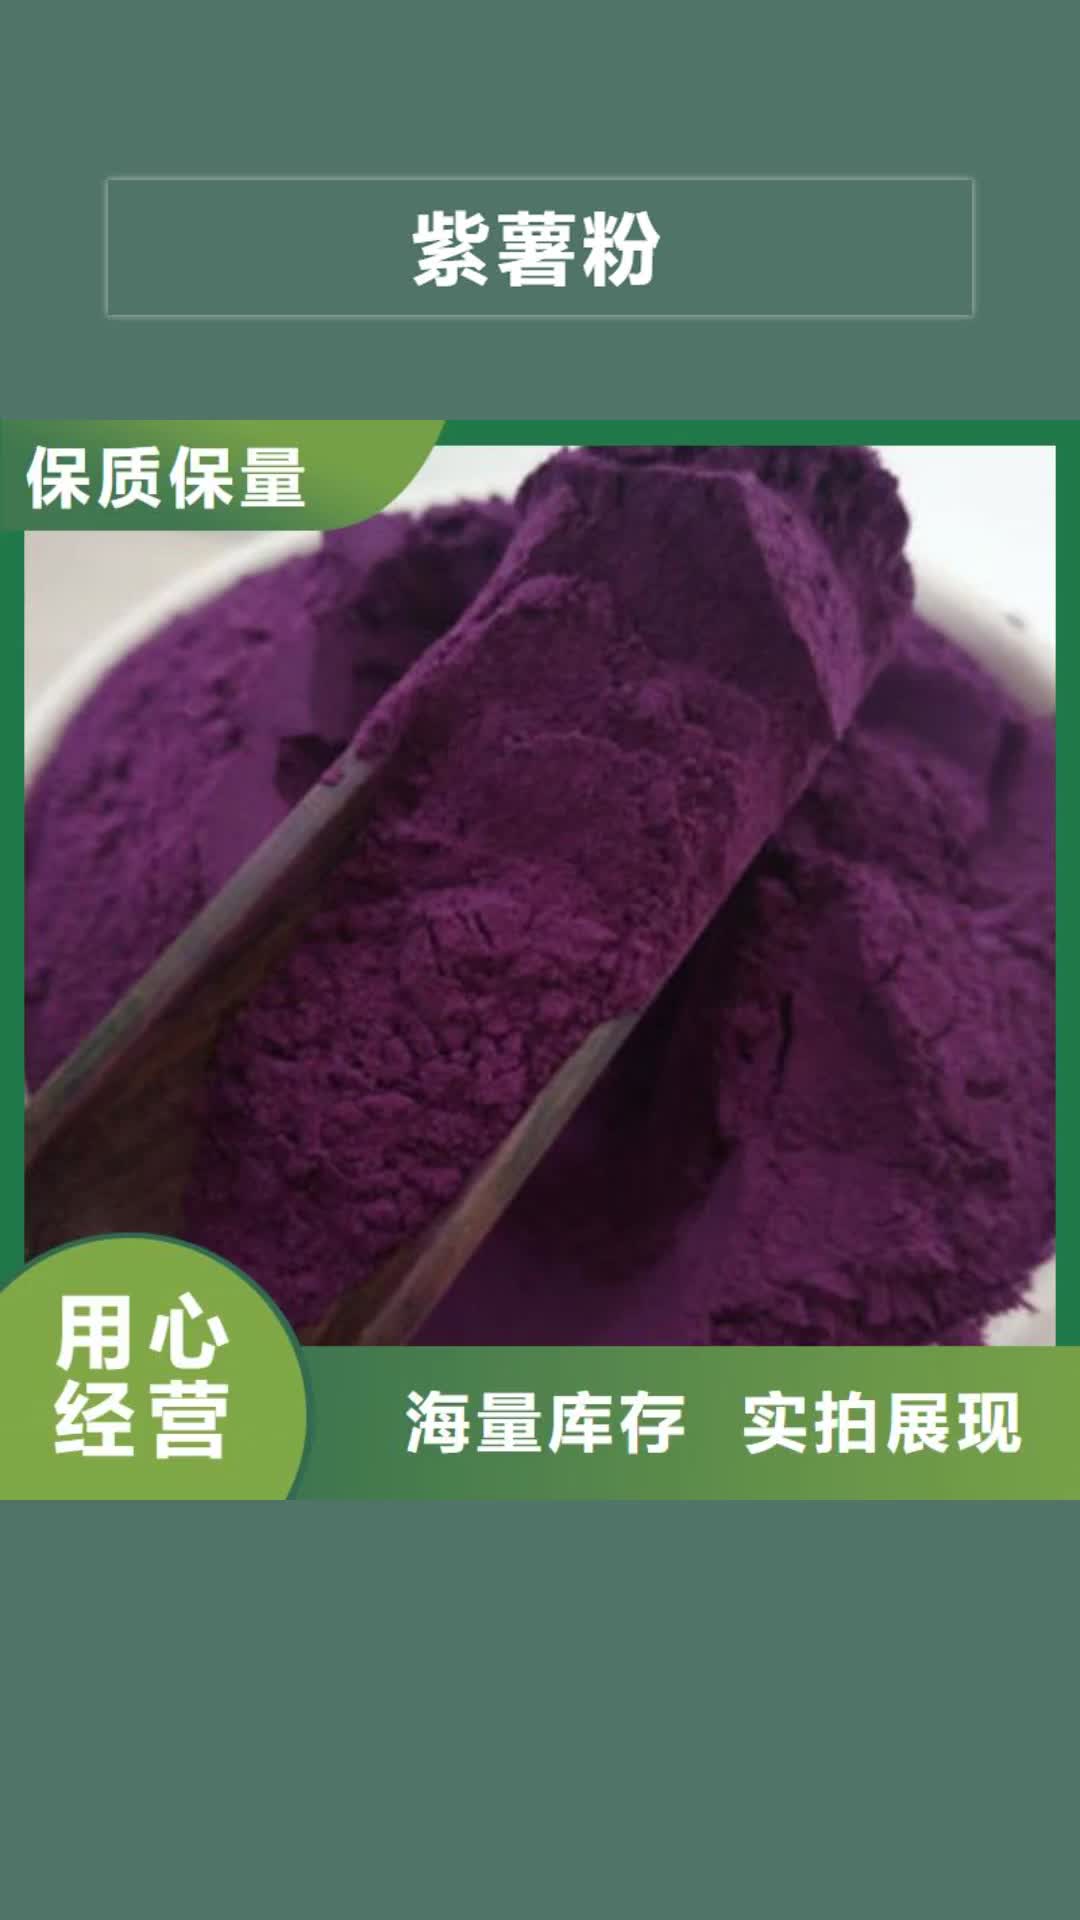 芜湖紫薯粉工艺成熟